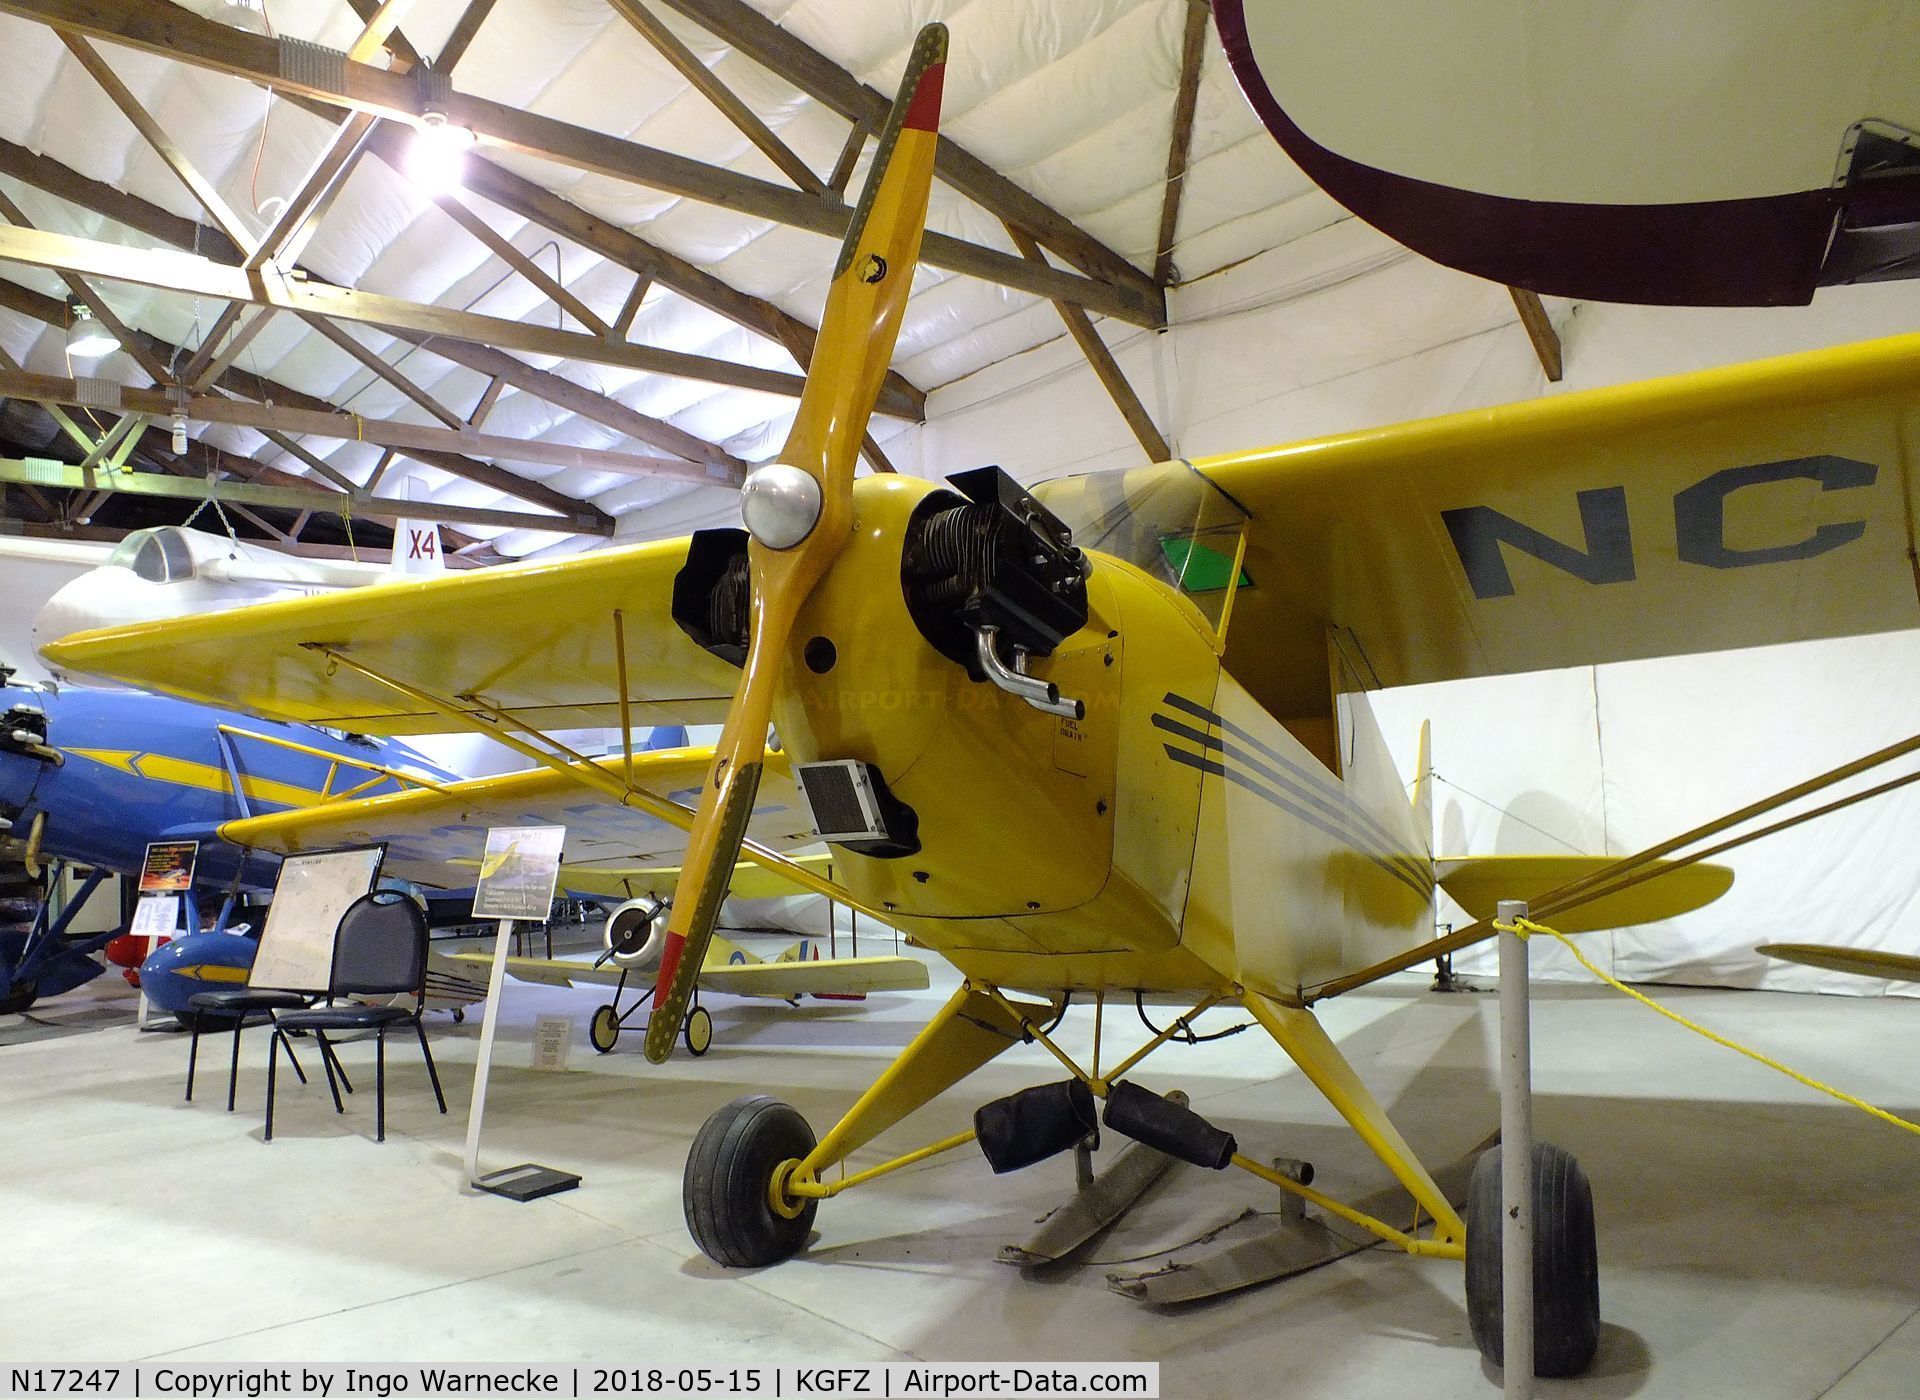 N17247, 1937 Piper J-2 C/N 913, Piper J2 Cub at the Iowa Aviation Museum, Greenfield IA